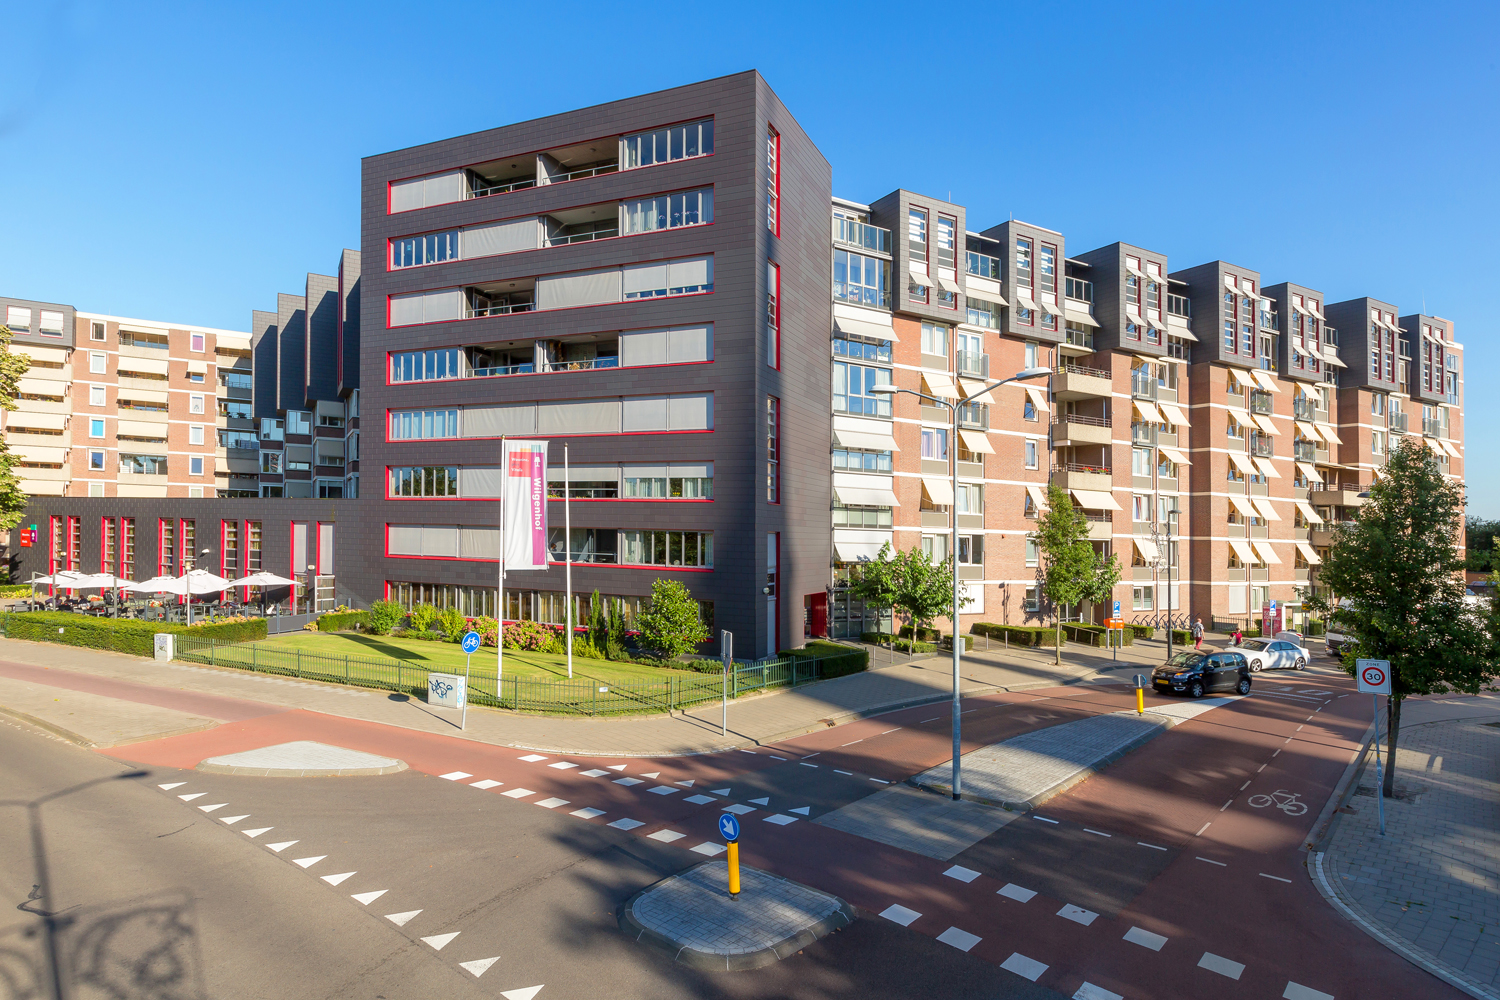 Gasthuisstraat 353, 5614 AV Eindhoven, Nederland